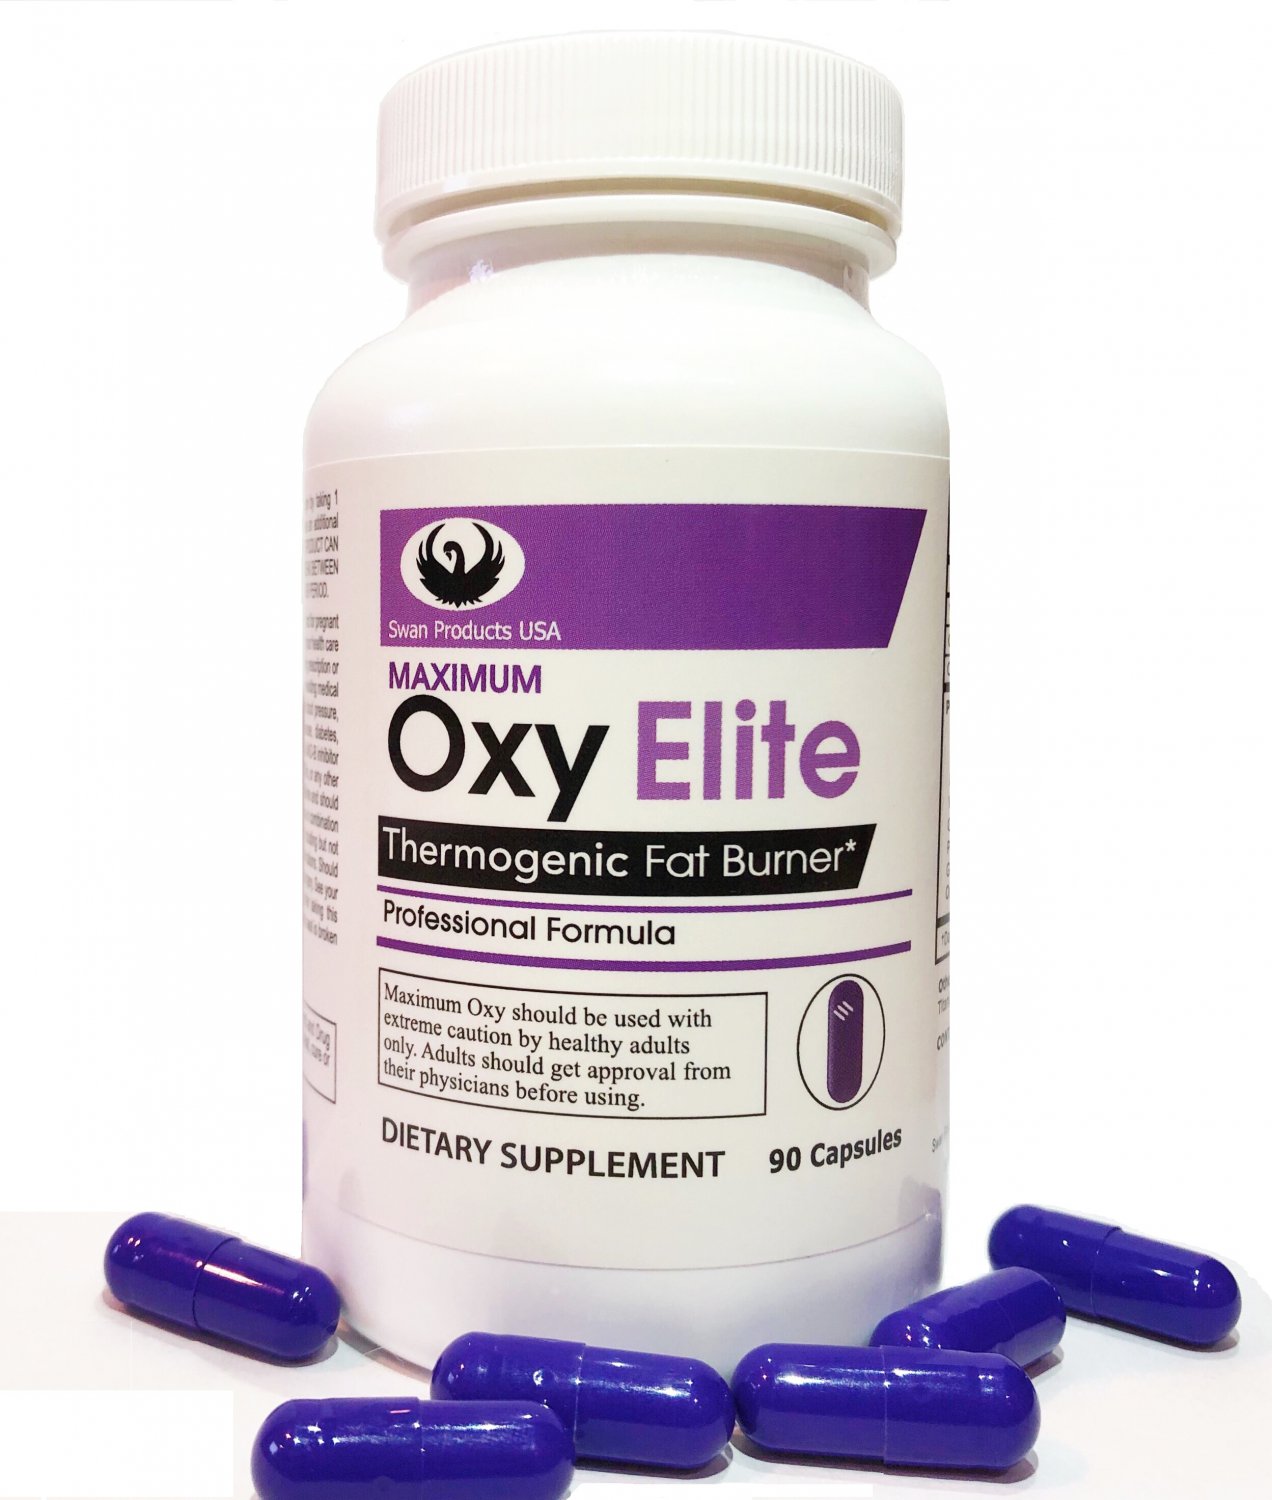 Maximum Oxy Elite Pro Formula Extreme Thermogenic Fat Burner & Weight